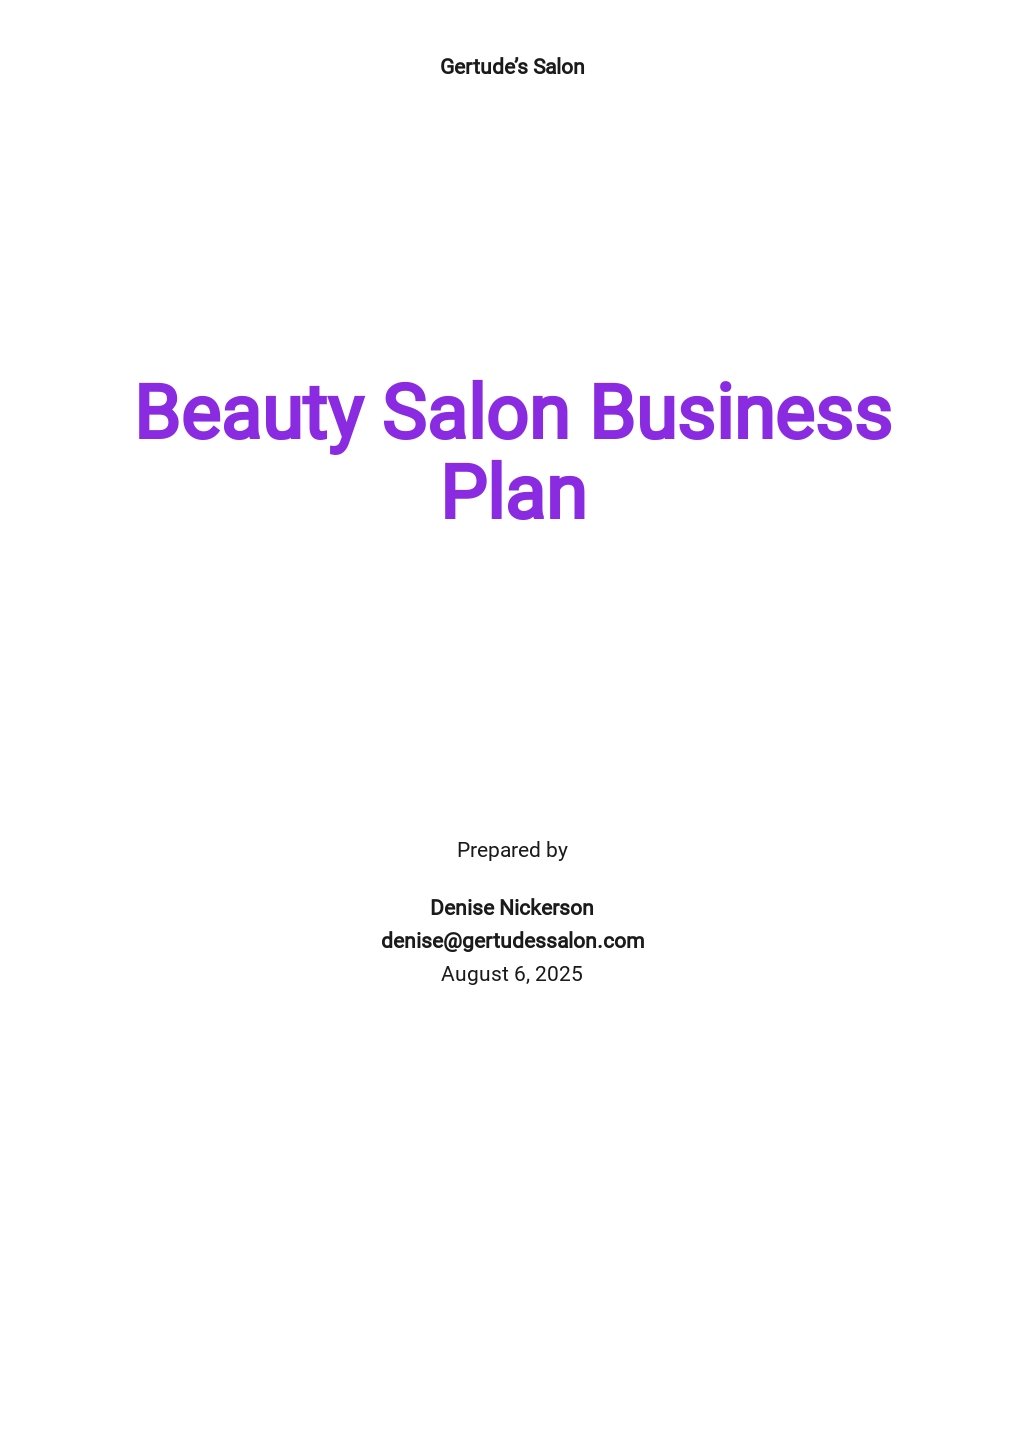 salon business plan pdf